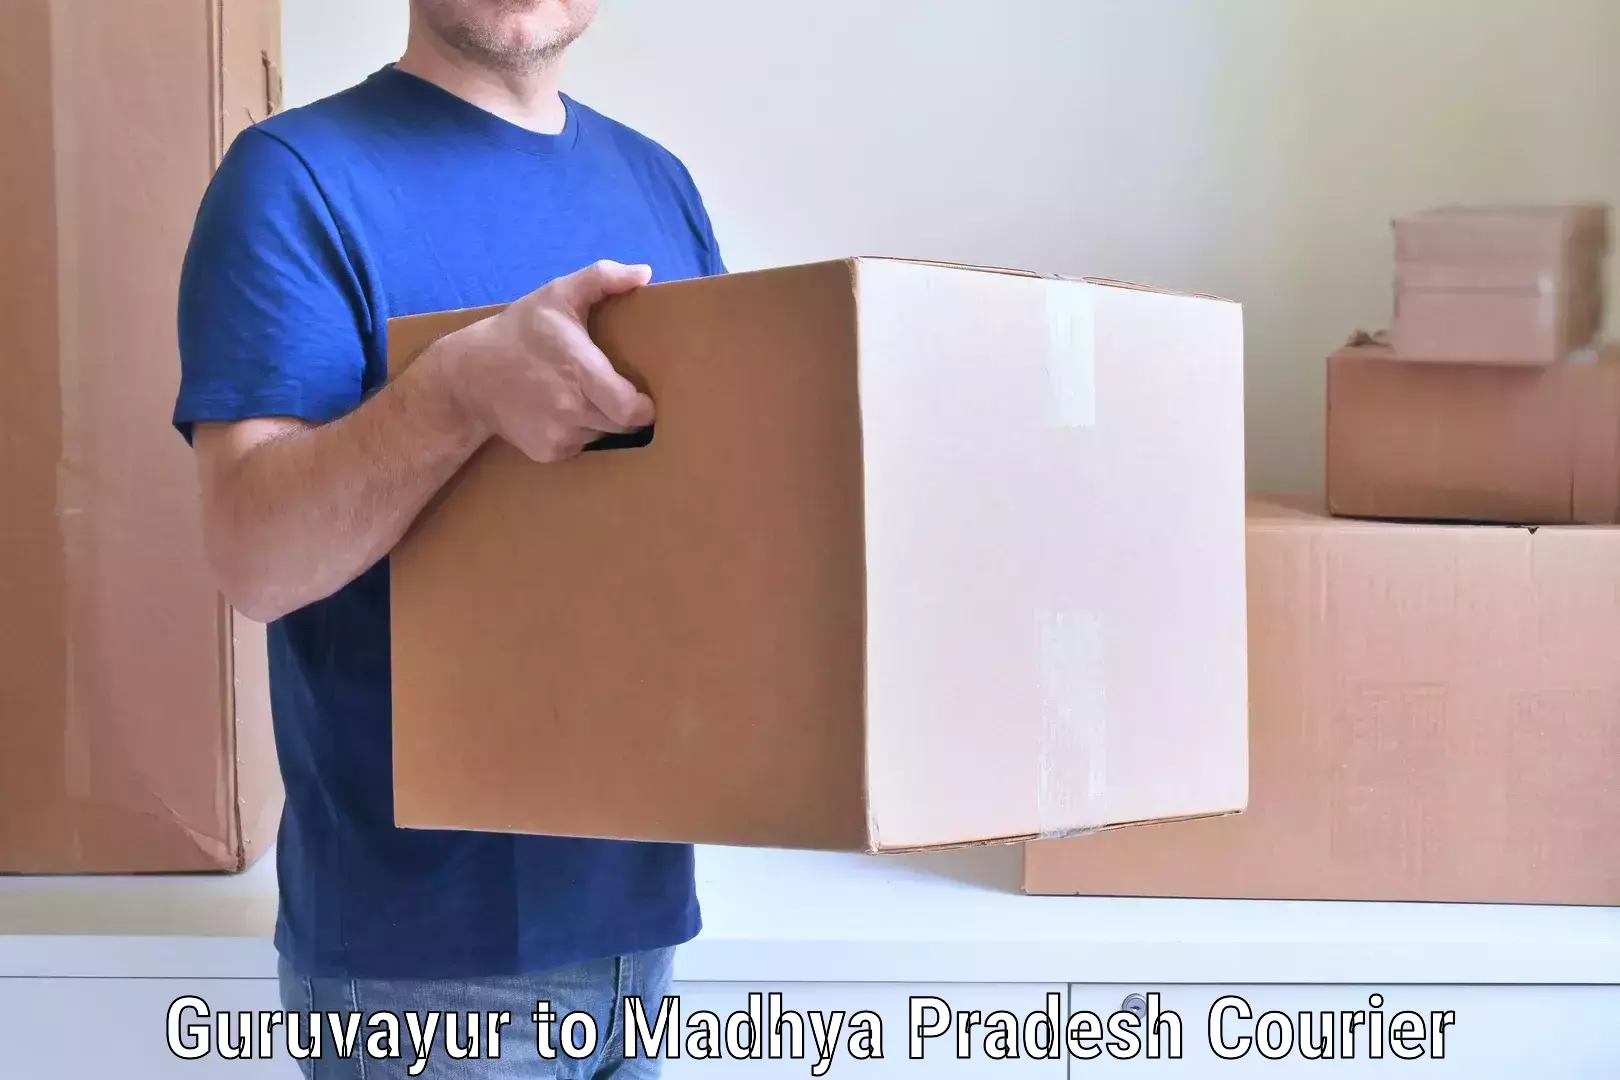 Efficient home movers Guruvayur to Madhya Pradesh